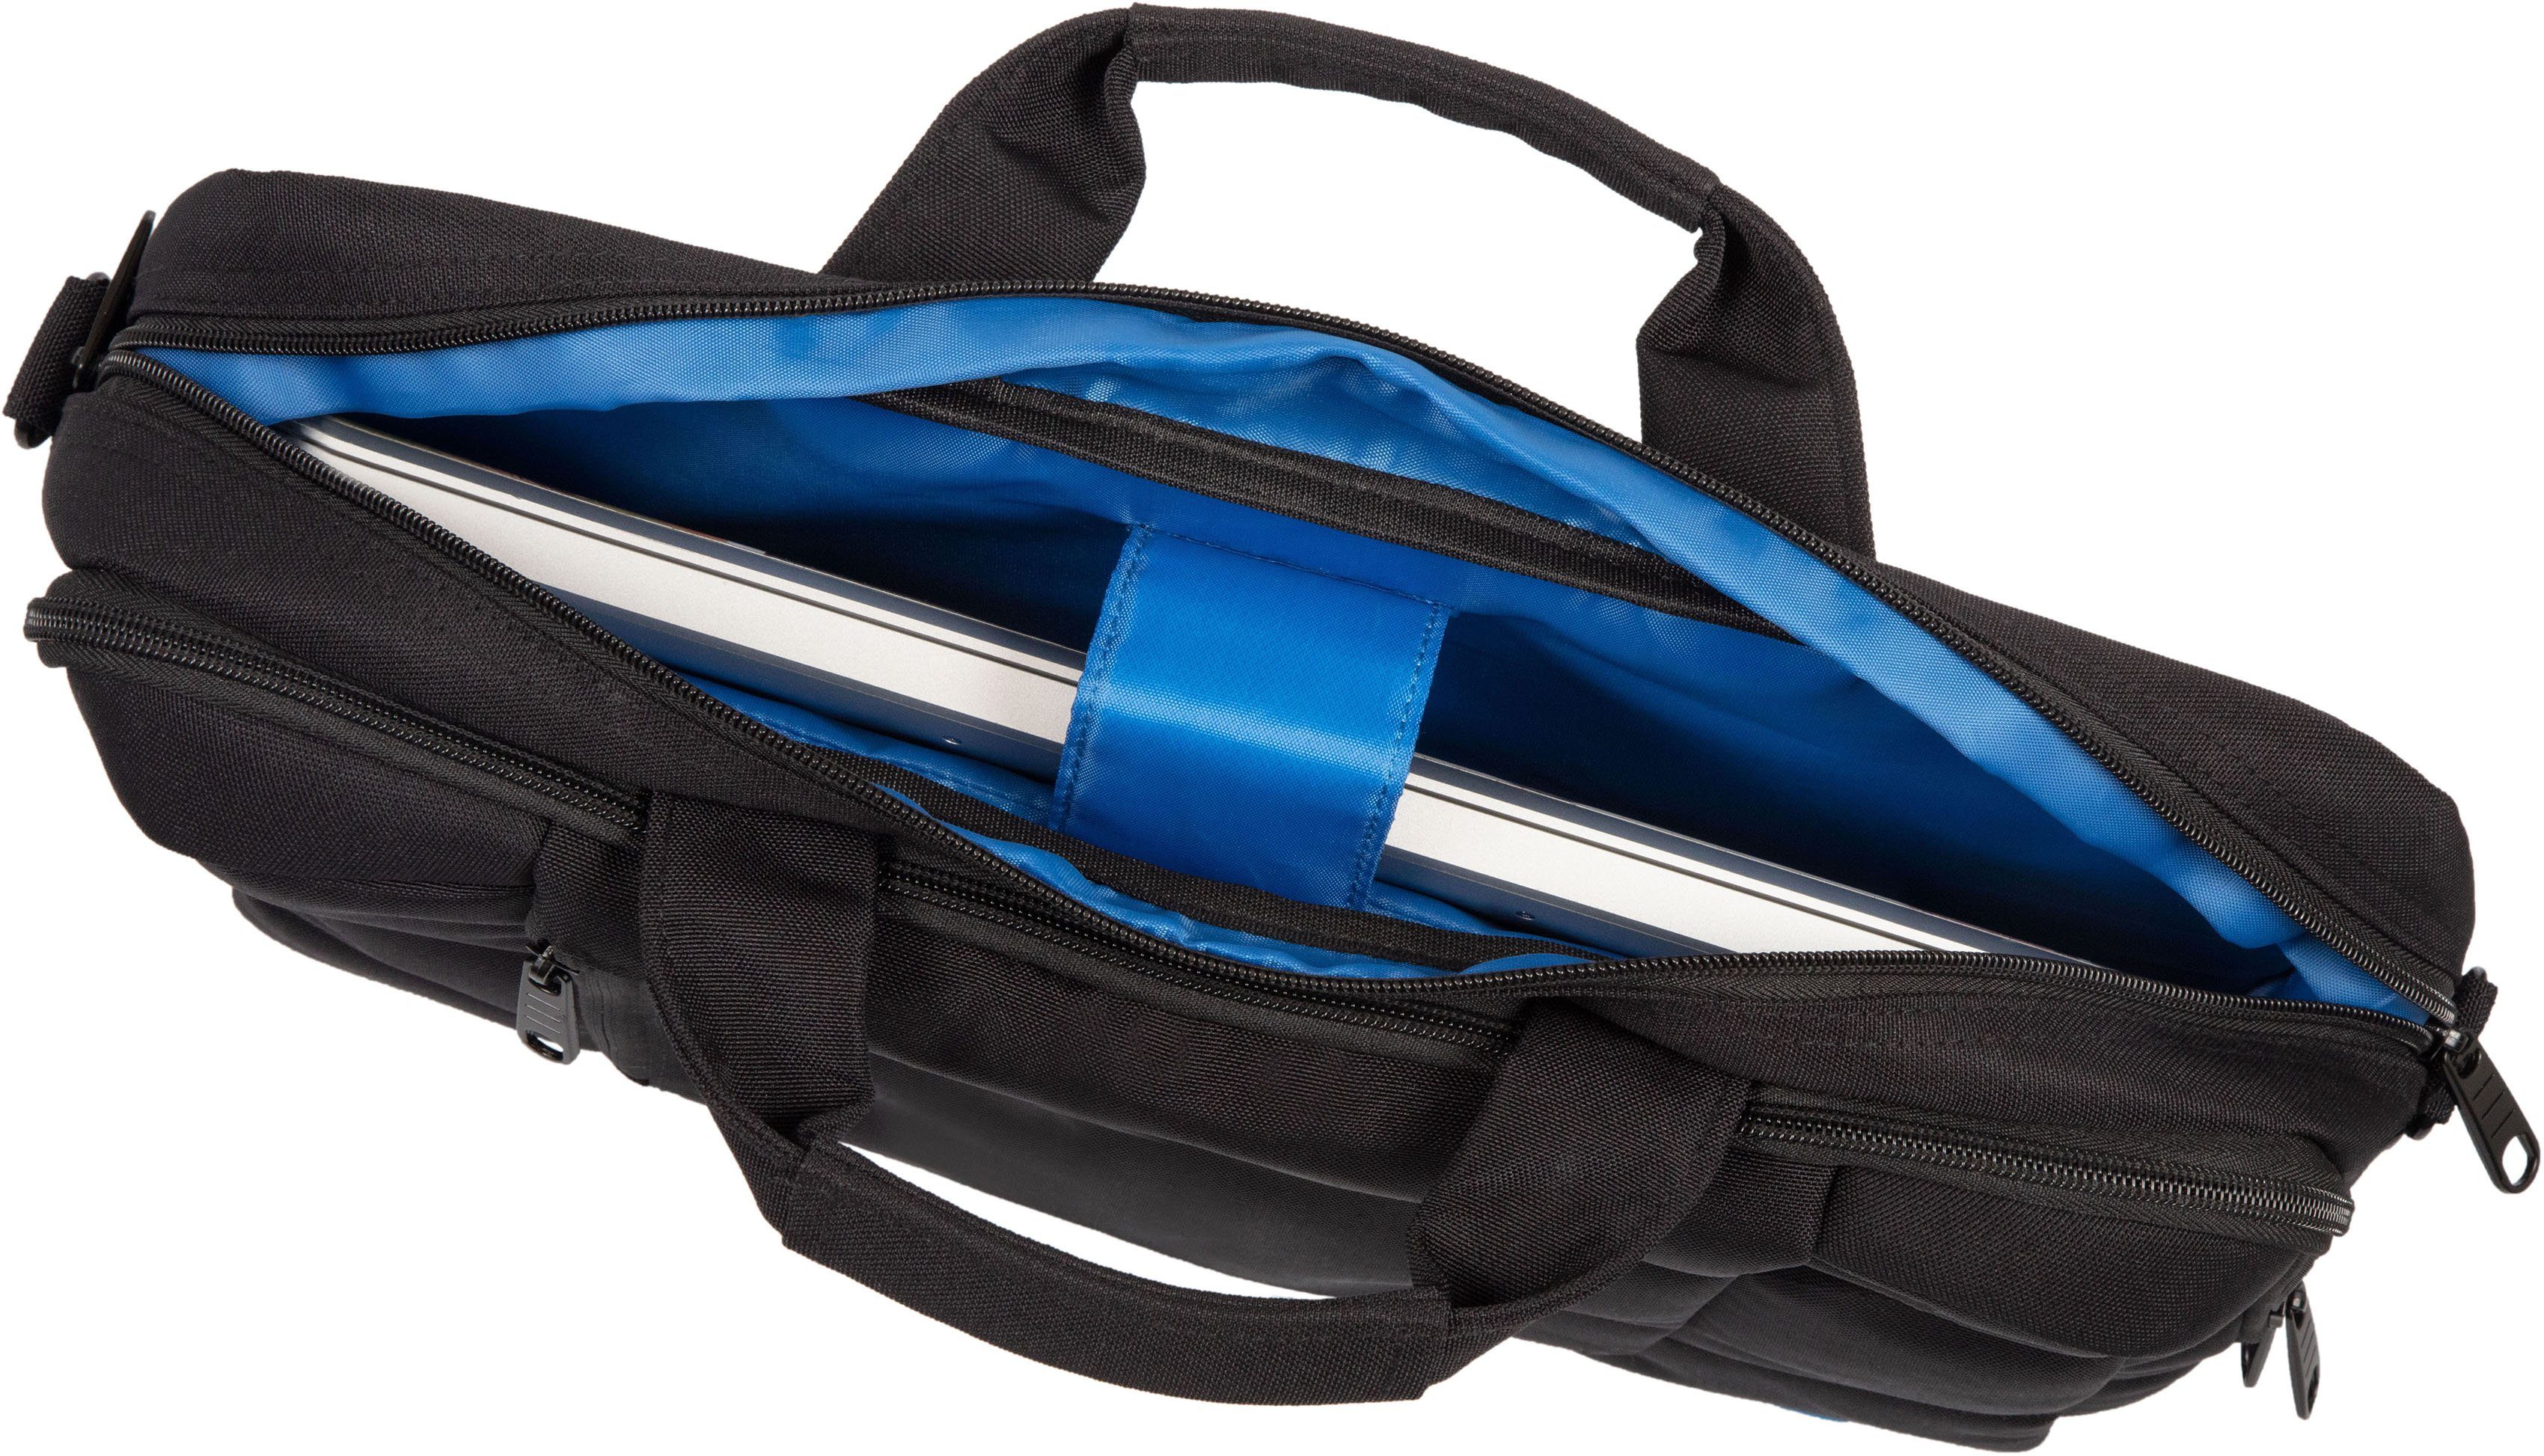 Herren Businesstaschen LIGHTPAK® Laptoptasche RPET, mit Trolley-Aufsteck-System; aus recyceltem Material